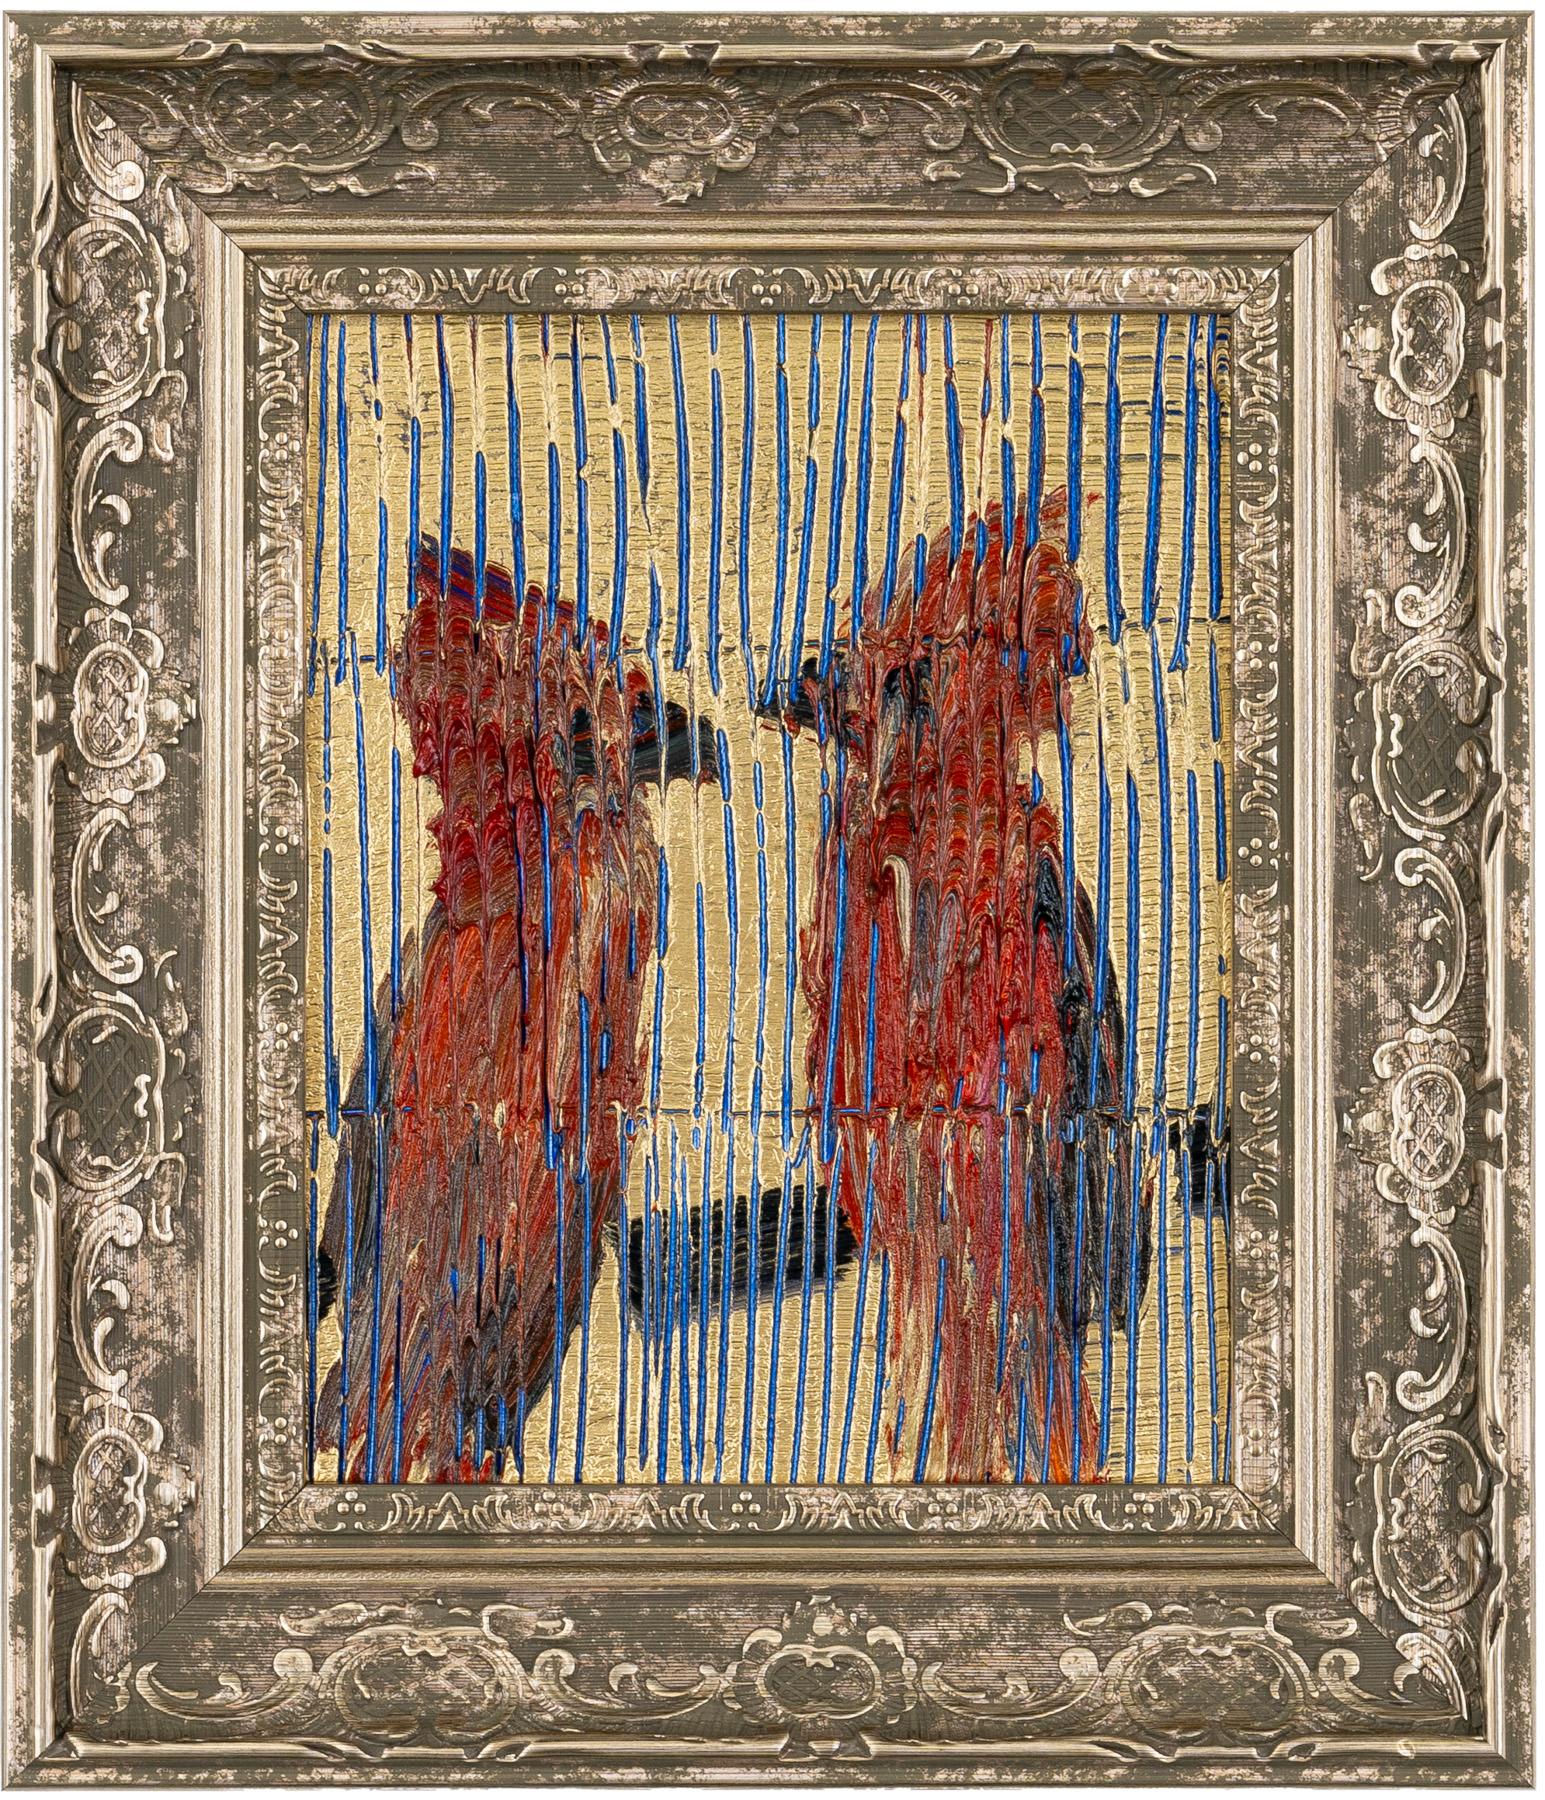 Hunt Slonem "Cardinals" Deux oiseaux rouges 
Deux oiseaux cardinaux rouges assis sur une branche sur un fond métallique doré et bleu gravé. Encadré dans un cadre ancien.

Sans cadre : 10 x 8 pouces
Encadré : 14.5 x 12.5 pouces
*Les peintures sont